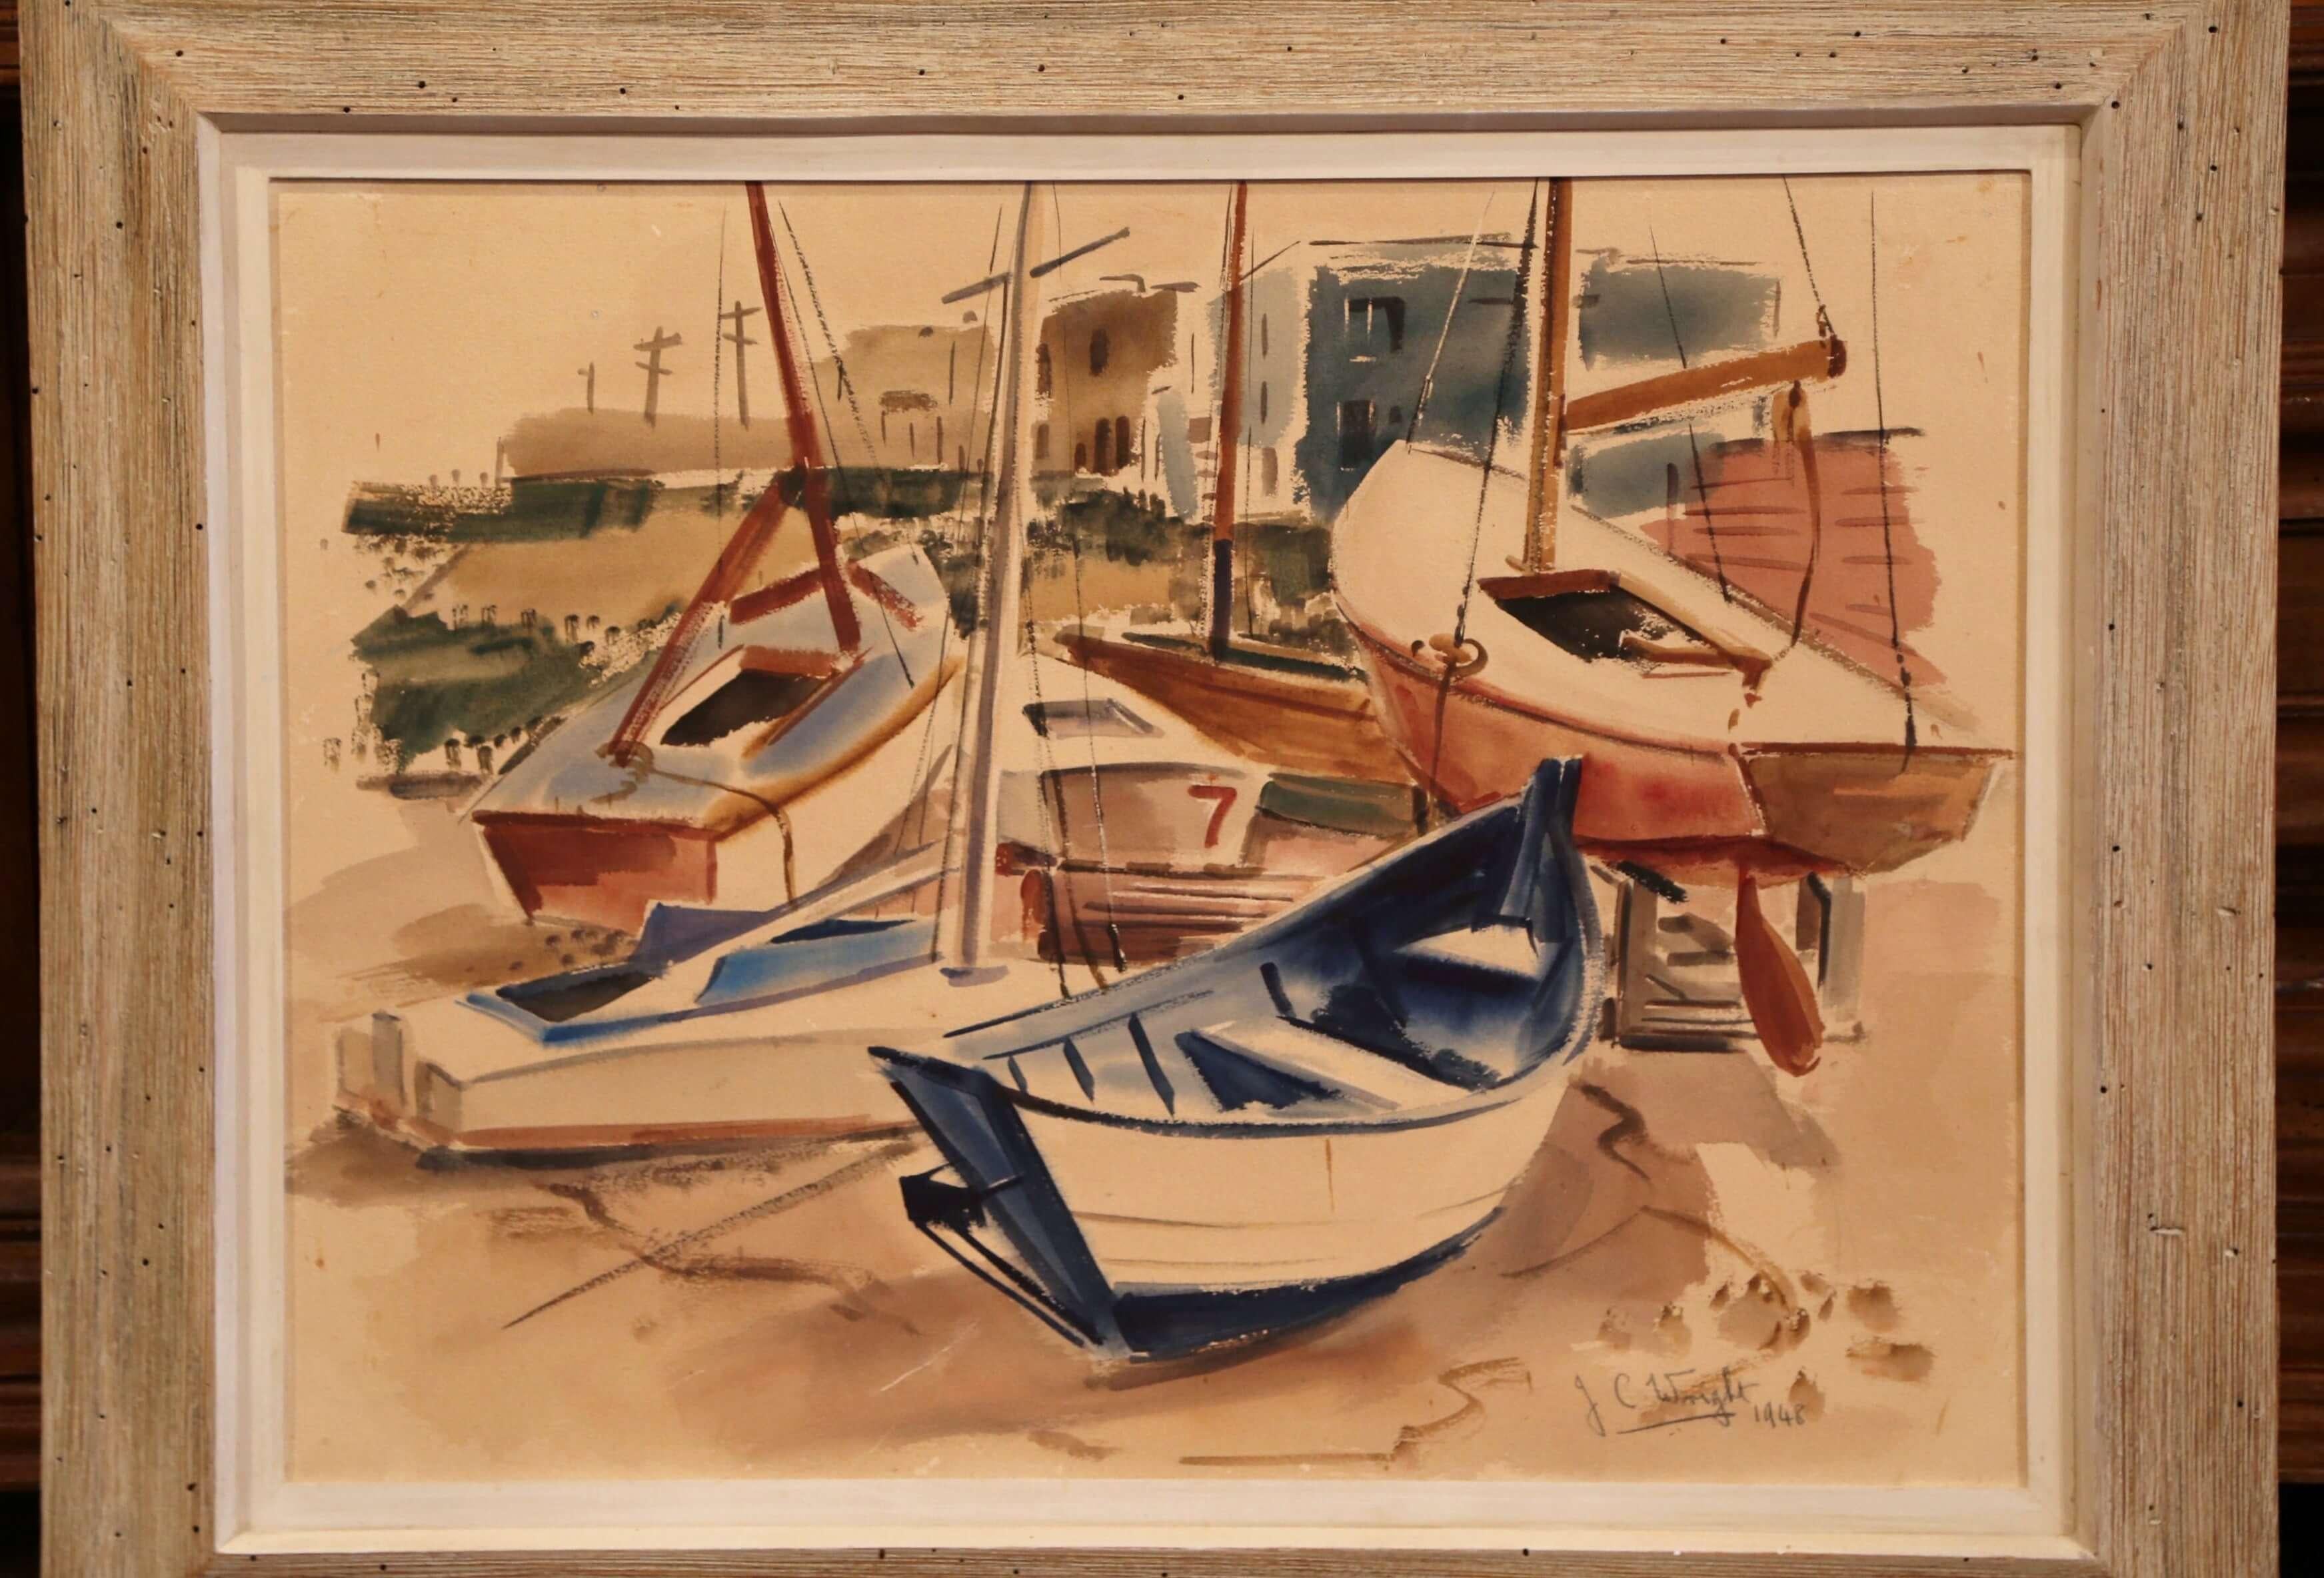 Dieses Gemälde aus der Mitte des 20. Jahrhunderts wurde in Südfrankreich gefunden. Das farbenfrohe Gemälde ist in den originalen Holzrahmen mit weißer Lackierung eingefasst und zeigt Segelboote im Hafen mit Wohnhäusern im Hintergrund. Das Kunstwerk